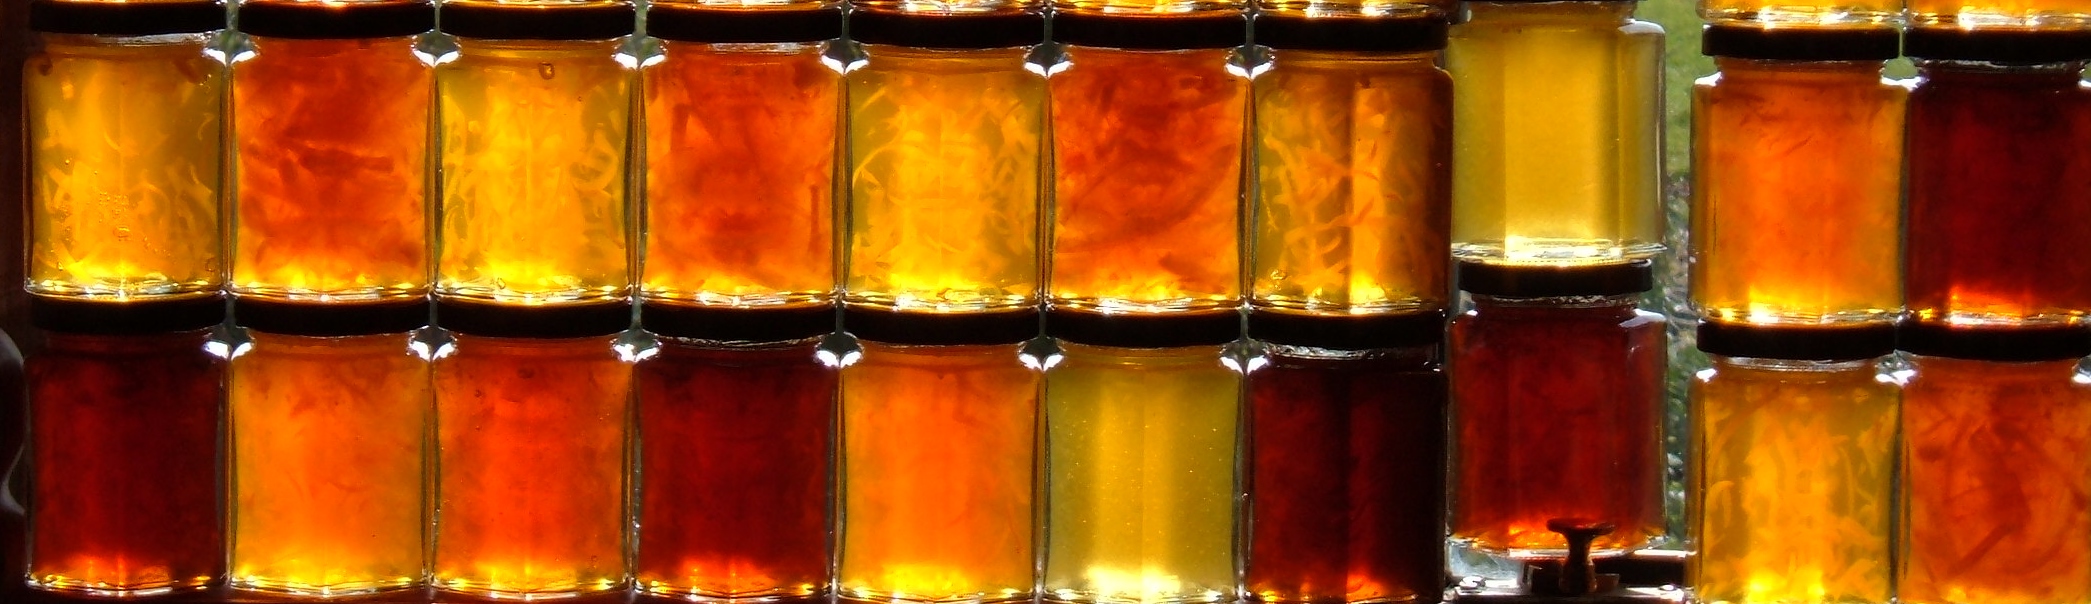 Honey Marmalade